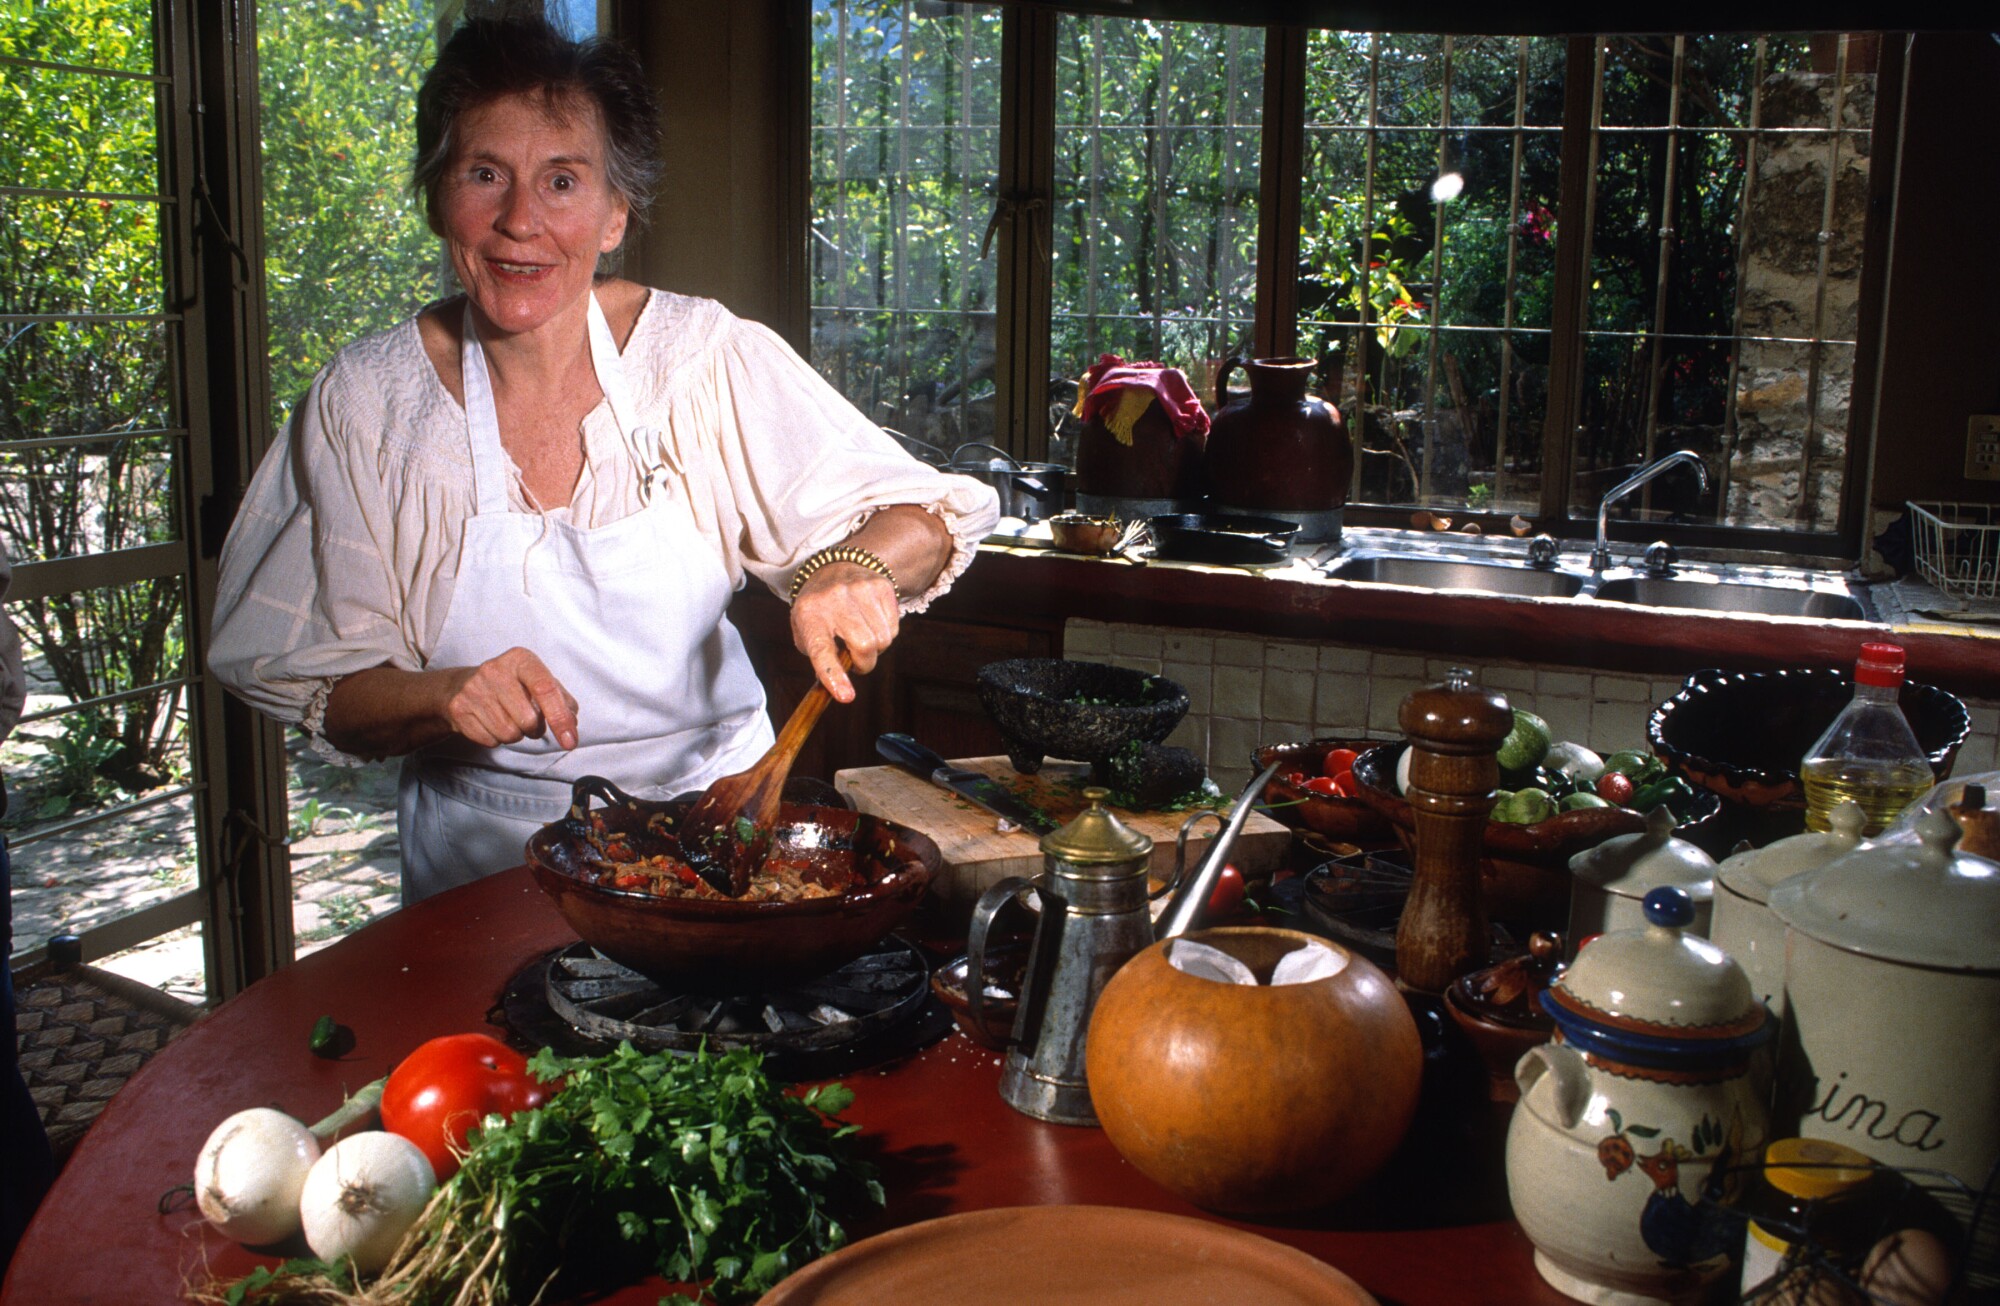 A woman stirs a bowl.